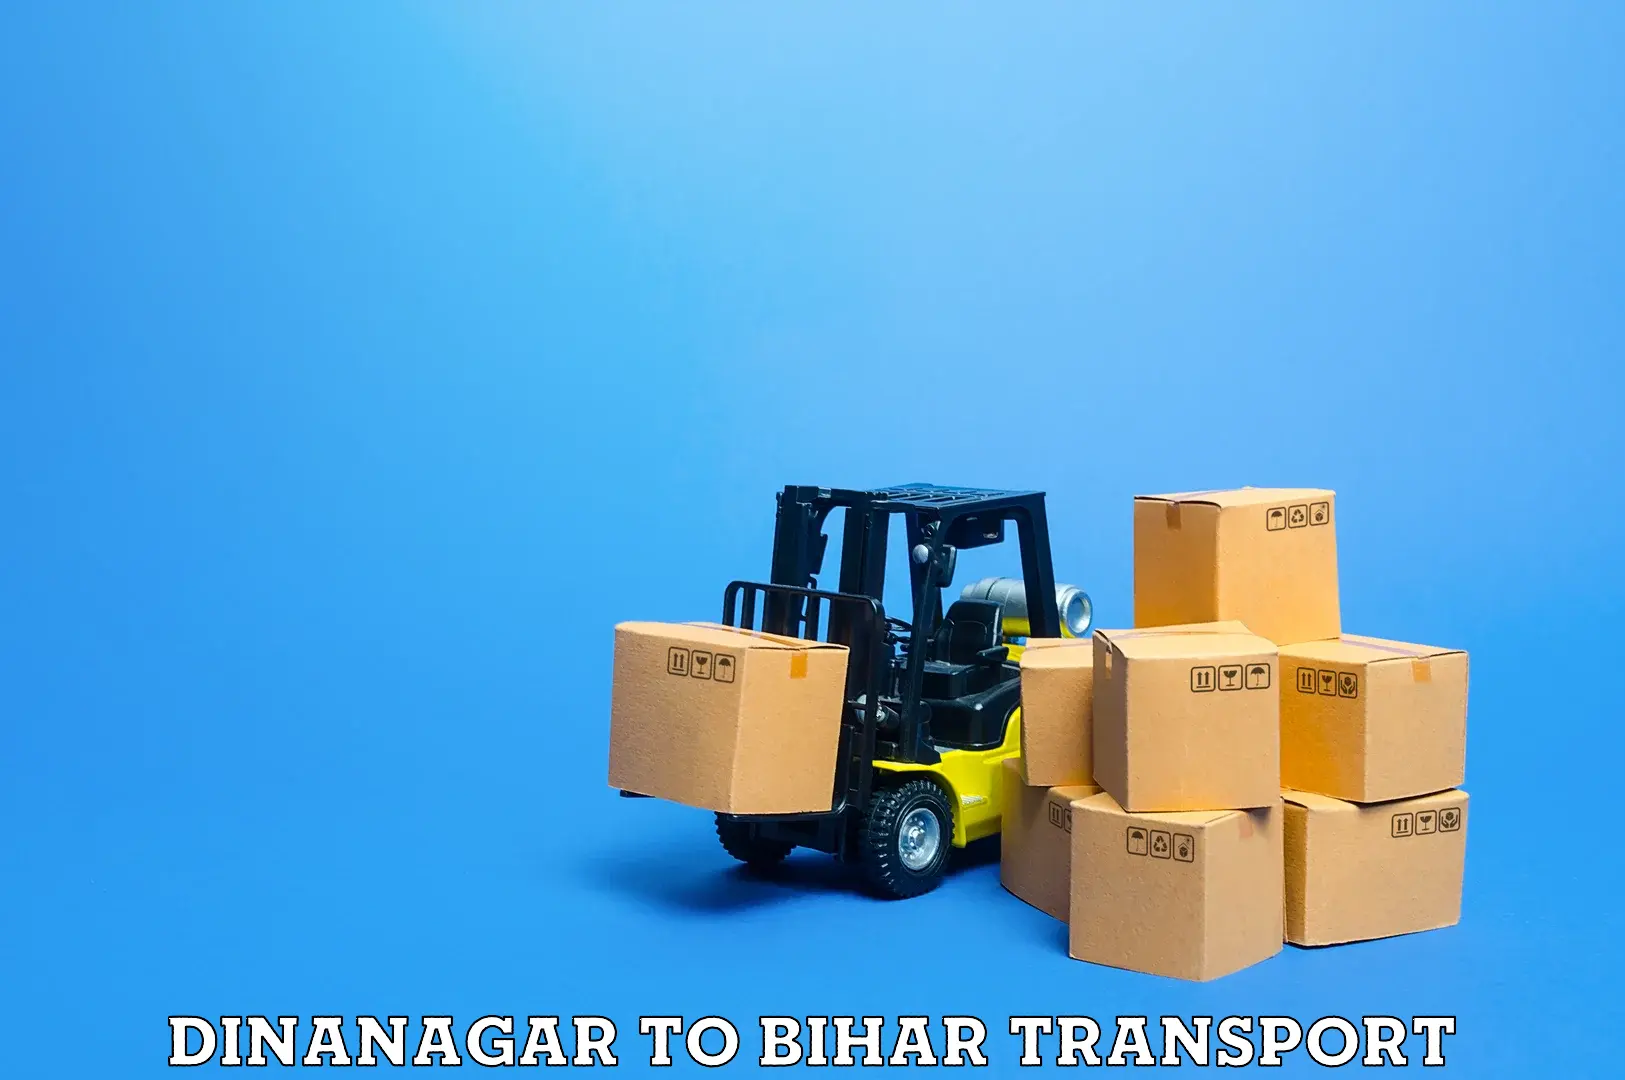 Lorry transport service Dinanagar to Fatwah